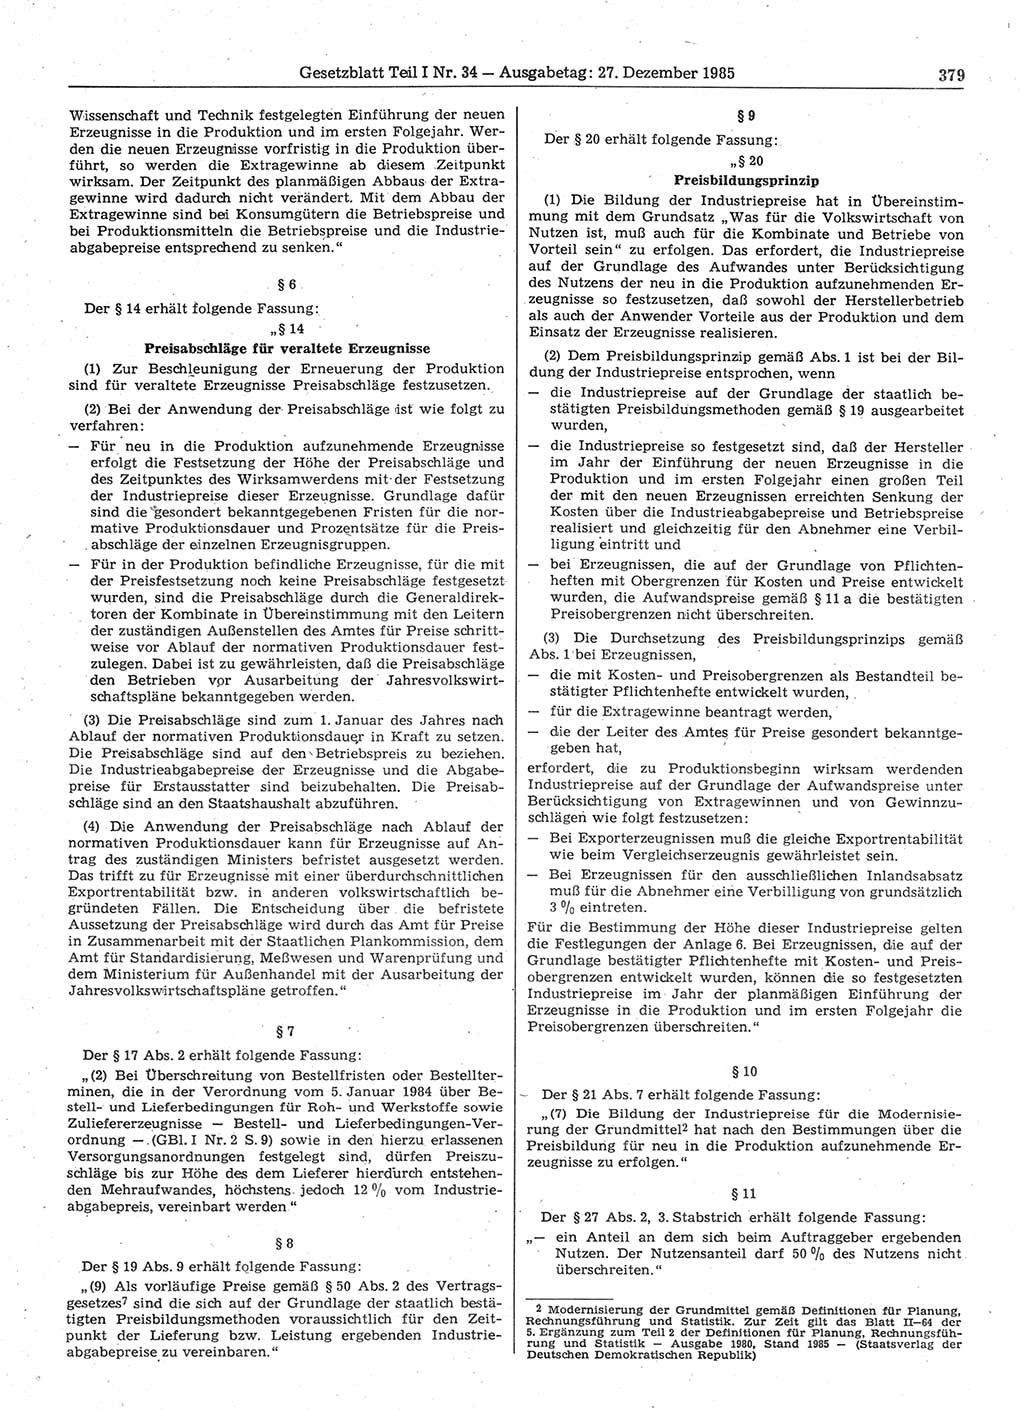 Gesetzblatt (GBl.) der Deutschen Demokratischen Republik (DDR) Teil Ⅰ 1985, Seite 379 (GBl. DDR Ⅰ 1985, S. 379)